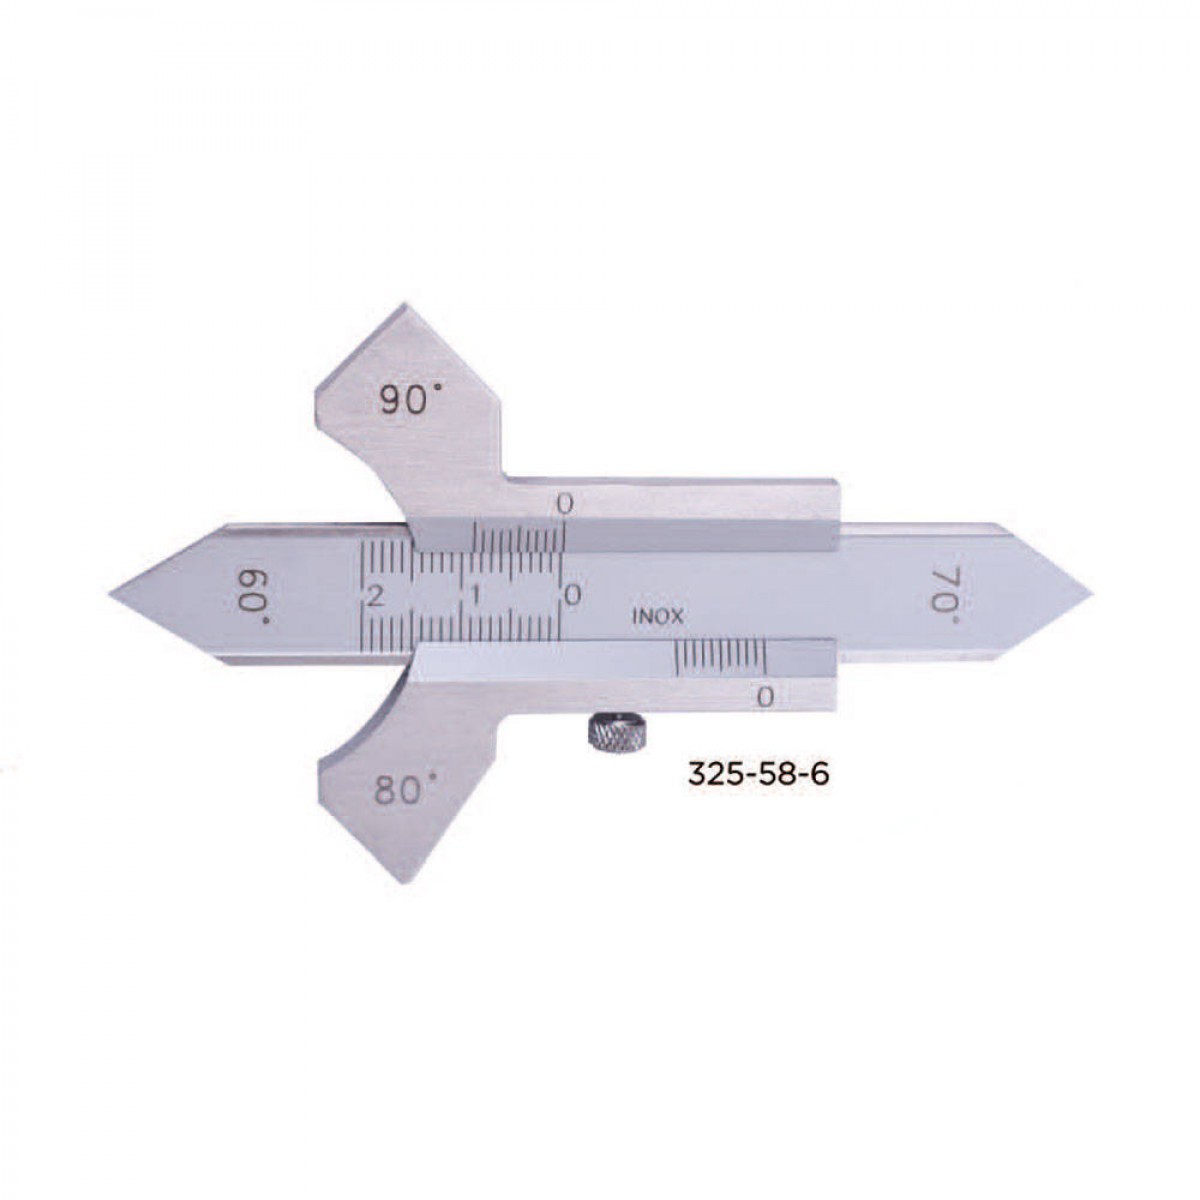 ASİMETO - Mekanik Kaynakçı Kumpası Model 0-20 mm